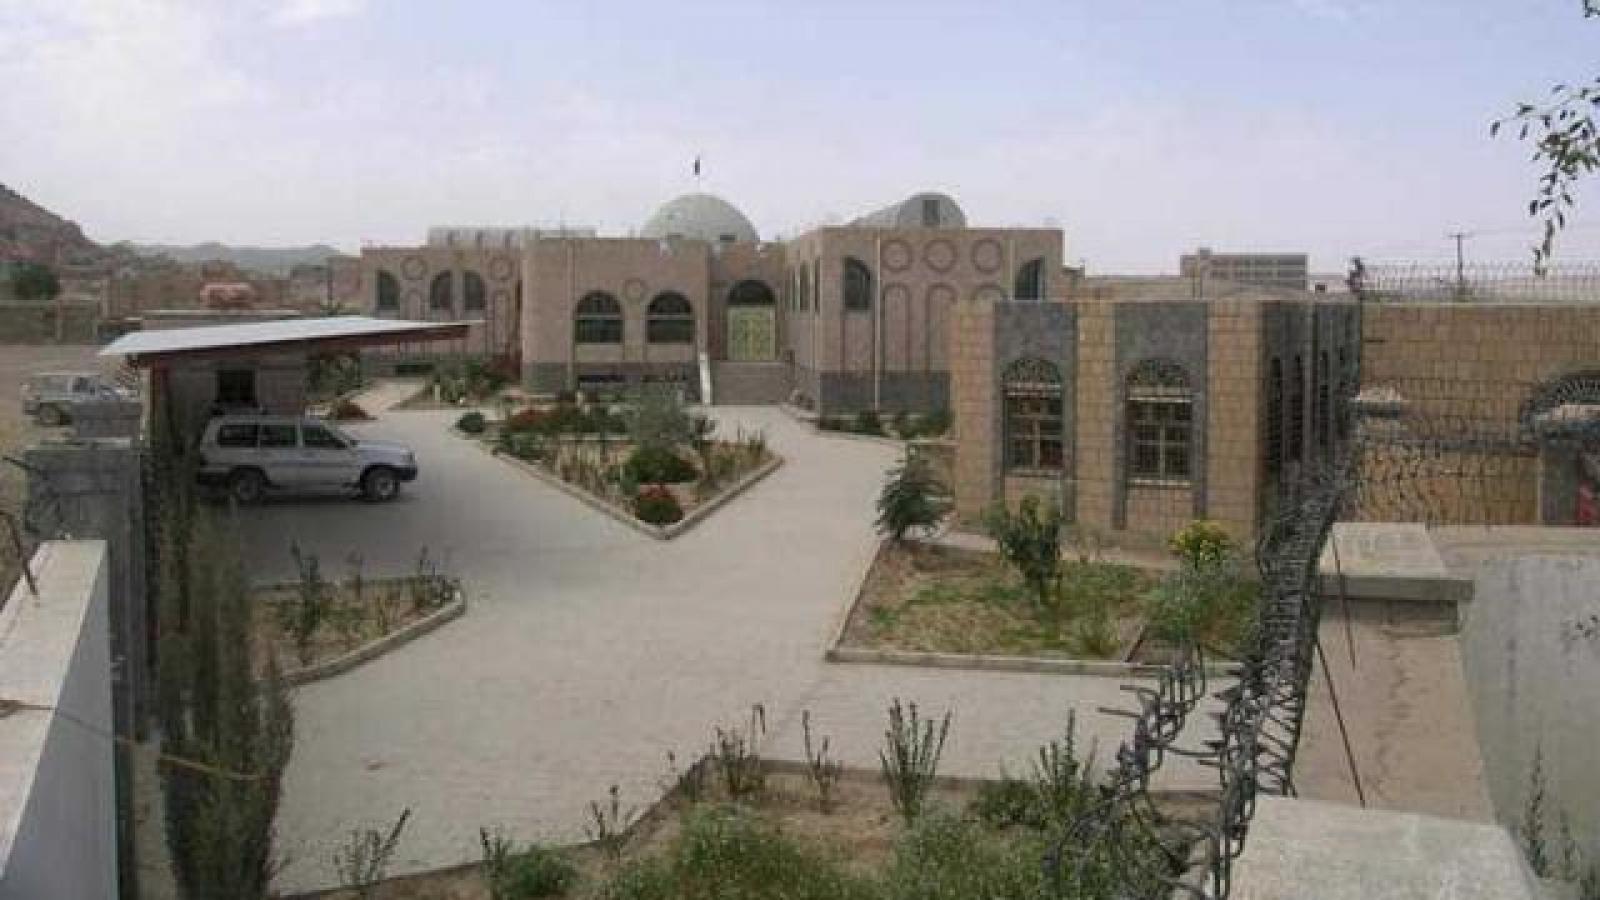 صورة للمتحف الجديد في بينون الذي بني حديثا لتجميع فيه كل الاثار المكتشفة في منطة بينون التأريخية ، موقع اليمني الجديد ، ۲۷ يناير ۲۰۱۹